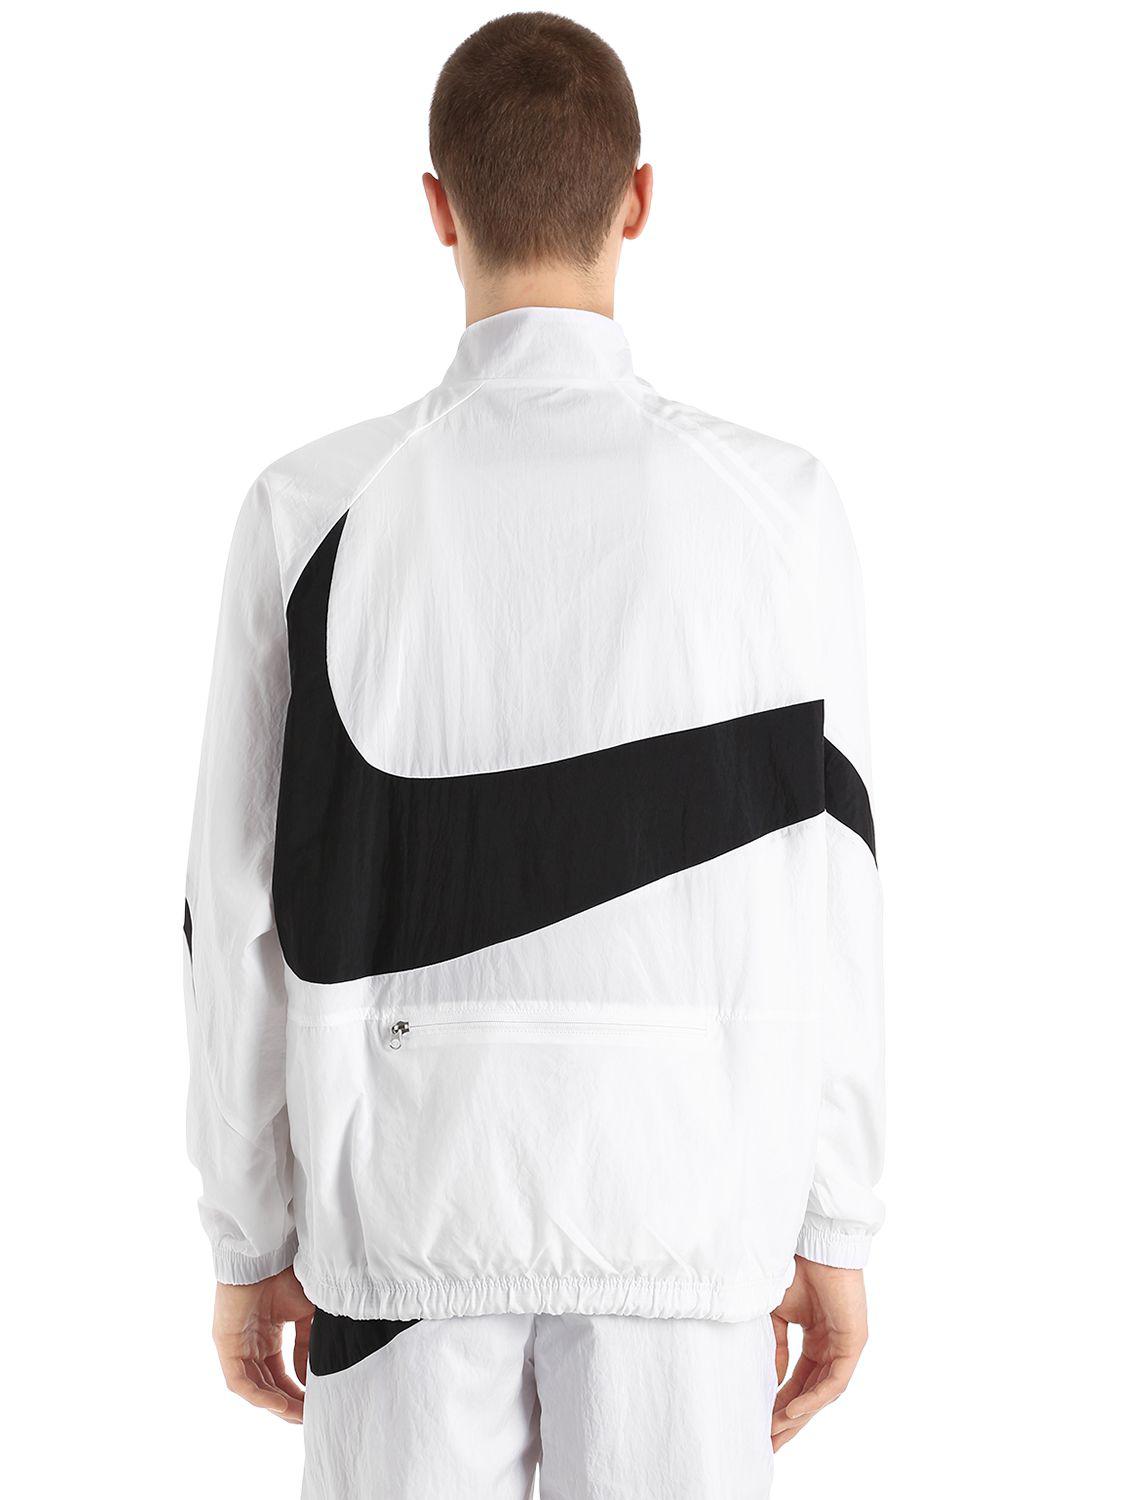 Nike Vaporwave Swoosh Woven Track Jacket in White for Men | Lyst UK